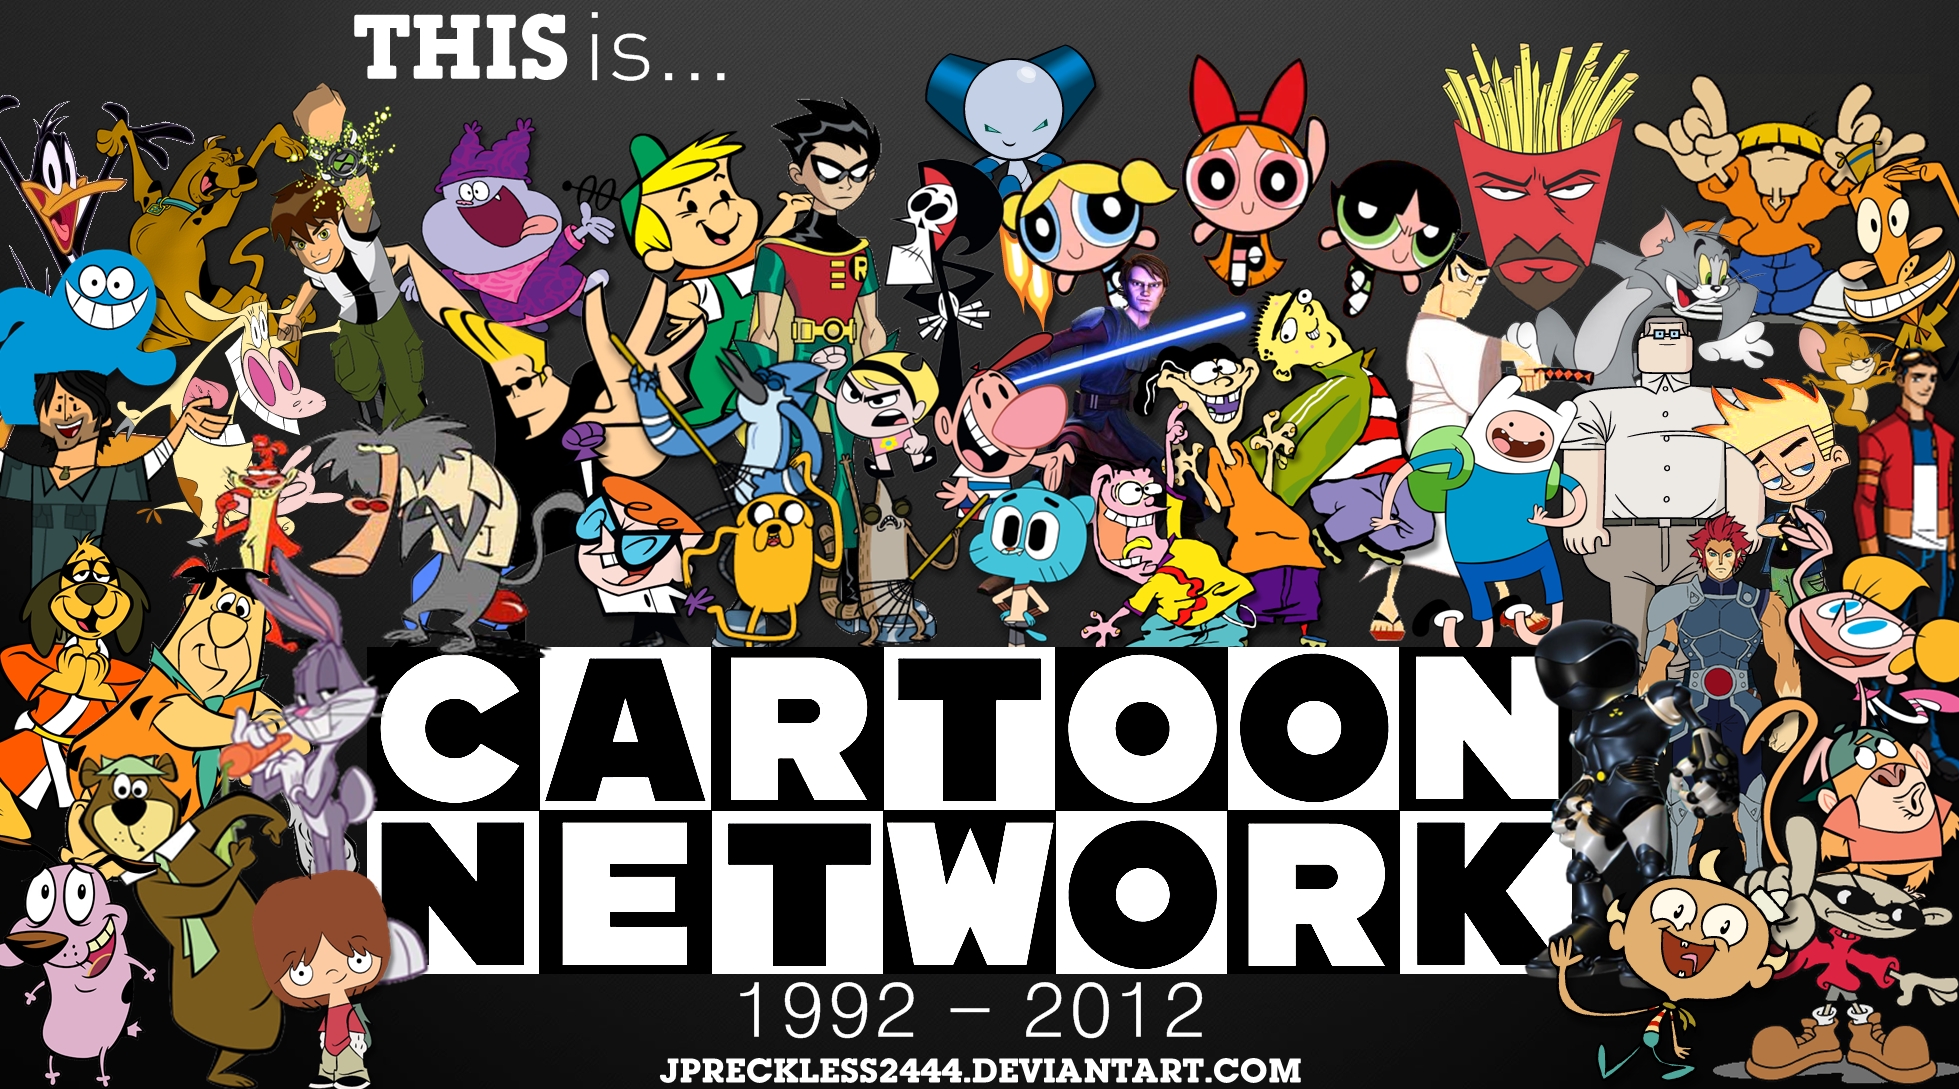 Đã đến lúc lấp đầy màn hình điện thoại của bạn với những hình nền Cartoon Network tuyệt đẹp rồi đấy! Tại đây, chúng ta có thể tìm thấy các bộ sưu tập độc đáo, được thiết kế bởi một đội ngũ những họa sĩ tài năng, giúp bạn tạo nên sự ấn tượng với bất kỳ ai nhìn vào điện thoại của bạn. Hãy cập nhật ngay hình nền mới nhất từ Cartoon Network để mang đến cho màn hình của bạn một cách sống động và rực rỡ!